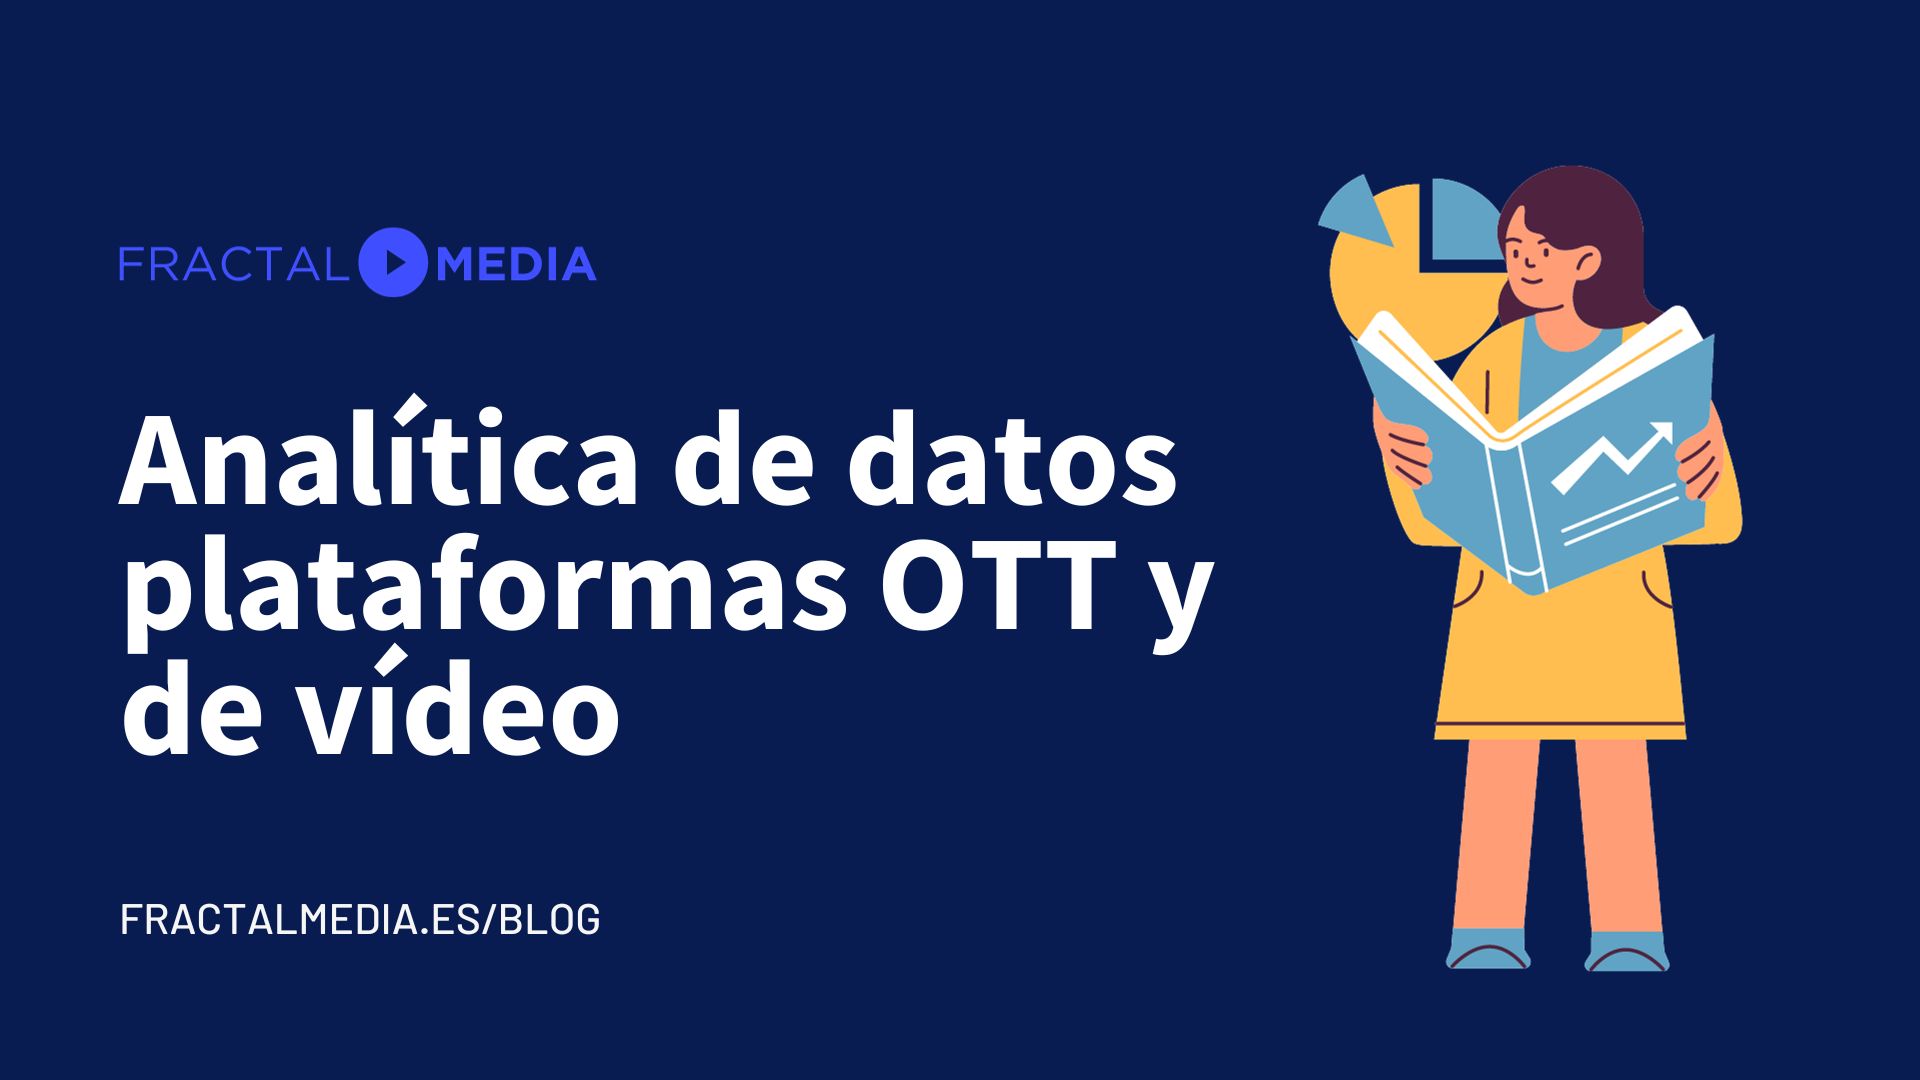 Analítica de datos en plataformas OTT y de video